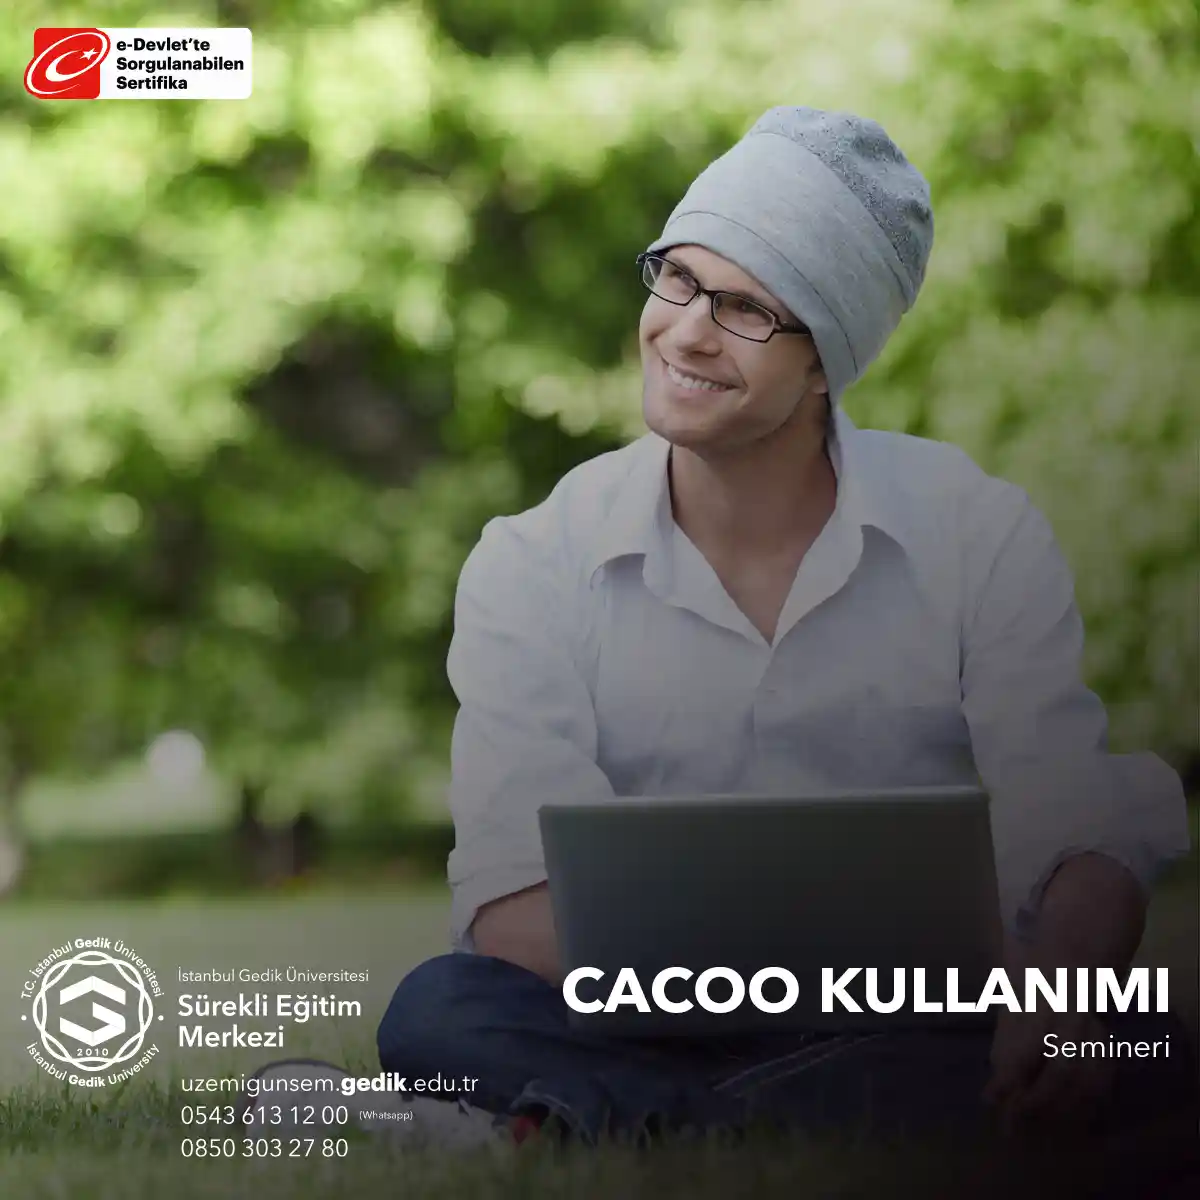 Cacoo Kullanımı Semineri, katılımcılara bu online çizim ve işbirliği platformunu etkili bir şekilde kullanarak görsel içerik oluşturma ve paylaşma yeteneklerini geliştirmeleri için bir fırsat sunar.